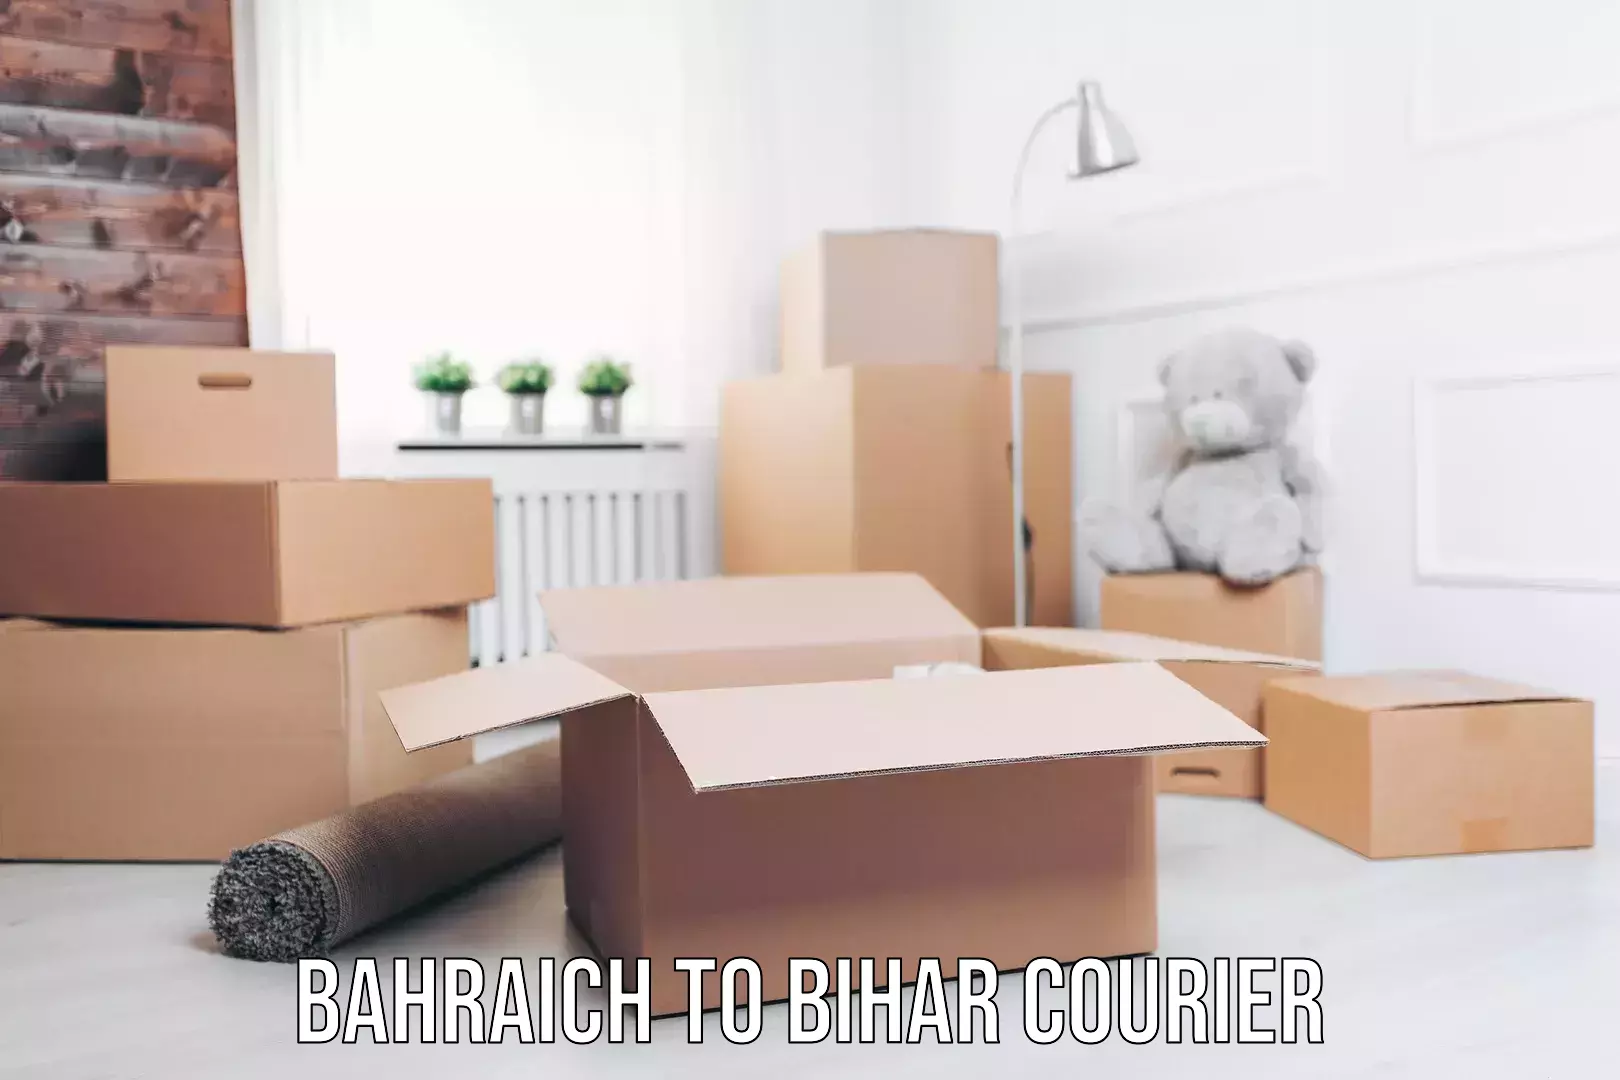 24/7 courier service Bahraich to Begusarai